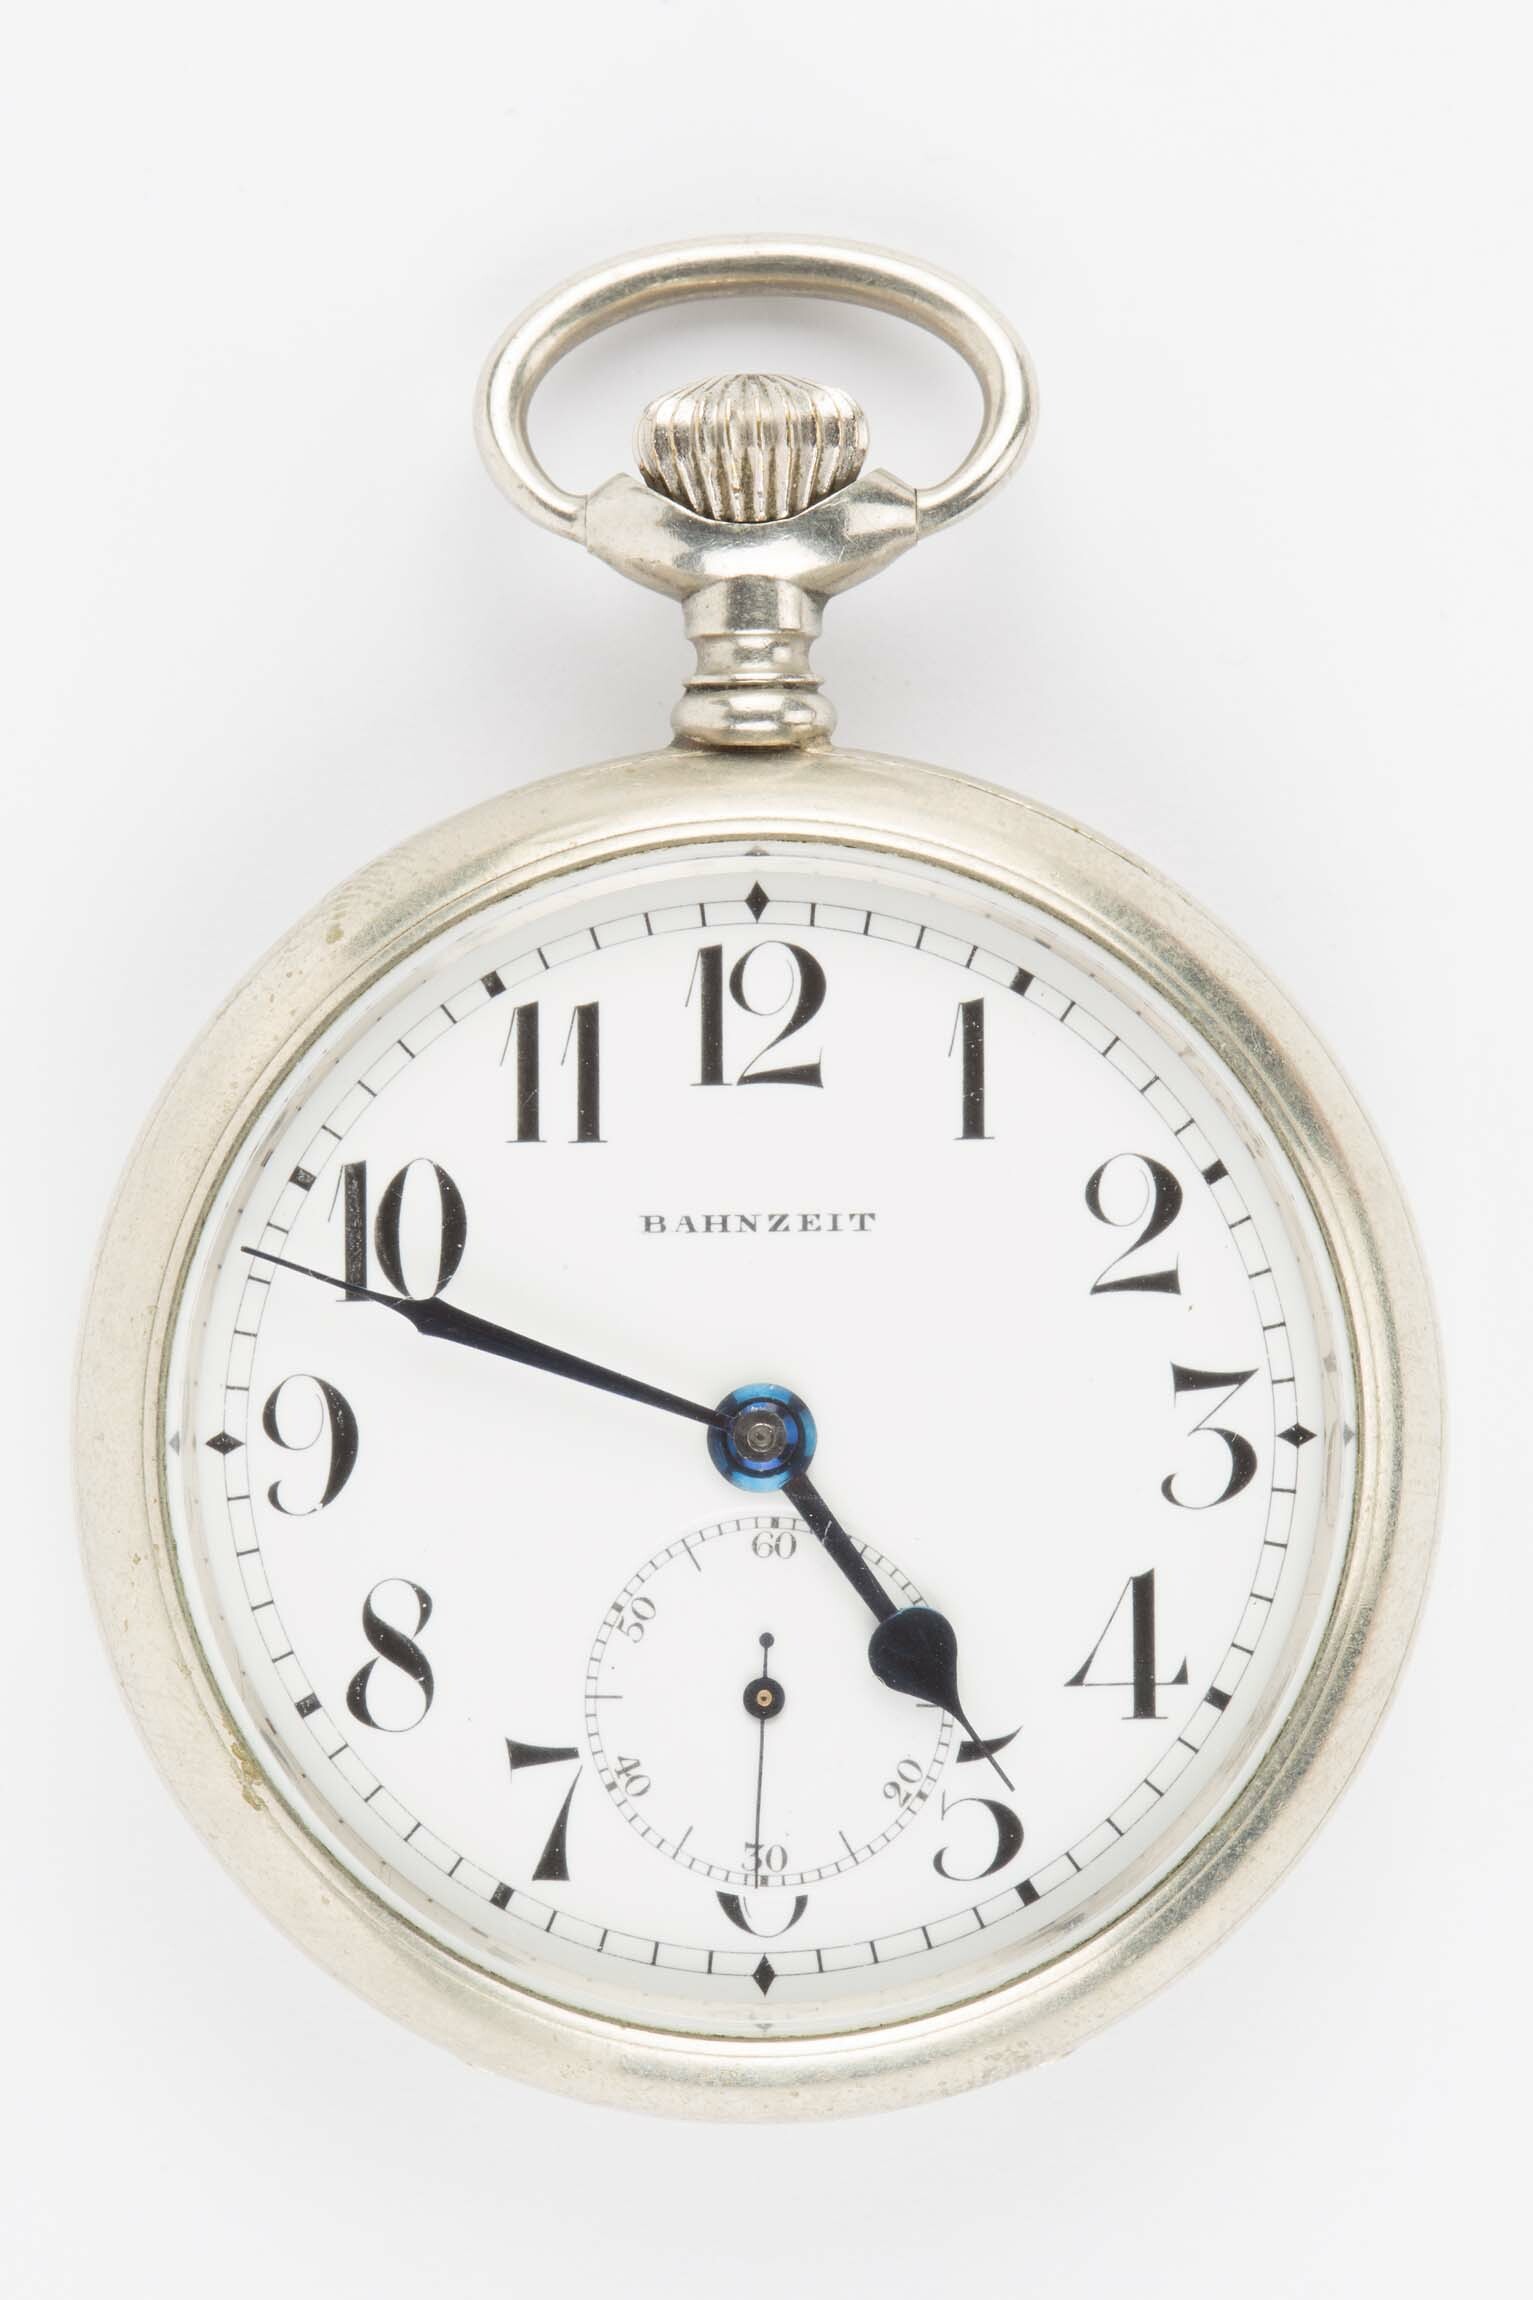 Taschenuhr, Minerva SA, Villeret (Schweiz), um 1930 (Deutsches Uhrenmuseum CC BY-SA)